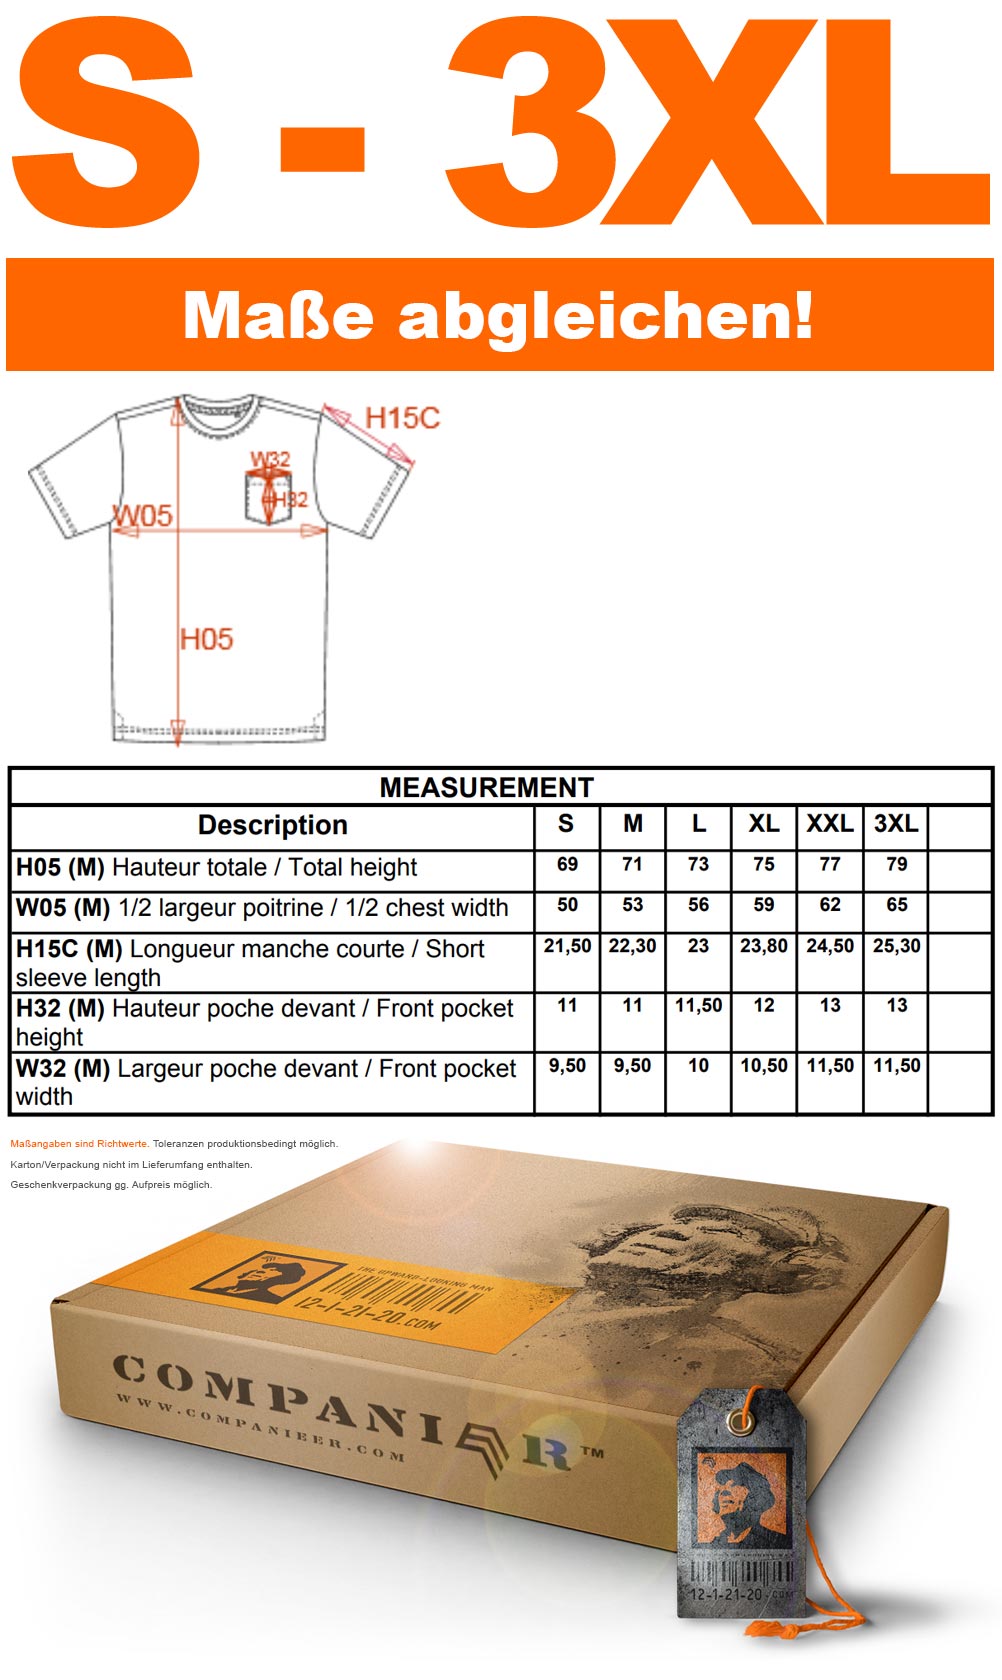 KRB K375 ― Herren Bio-Baumwolle T-Shirt mit Brusttasche - Schwarz / Grau Melange